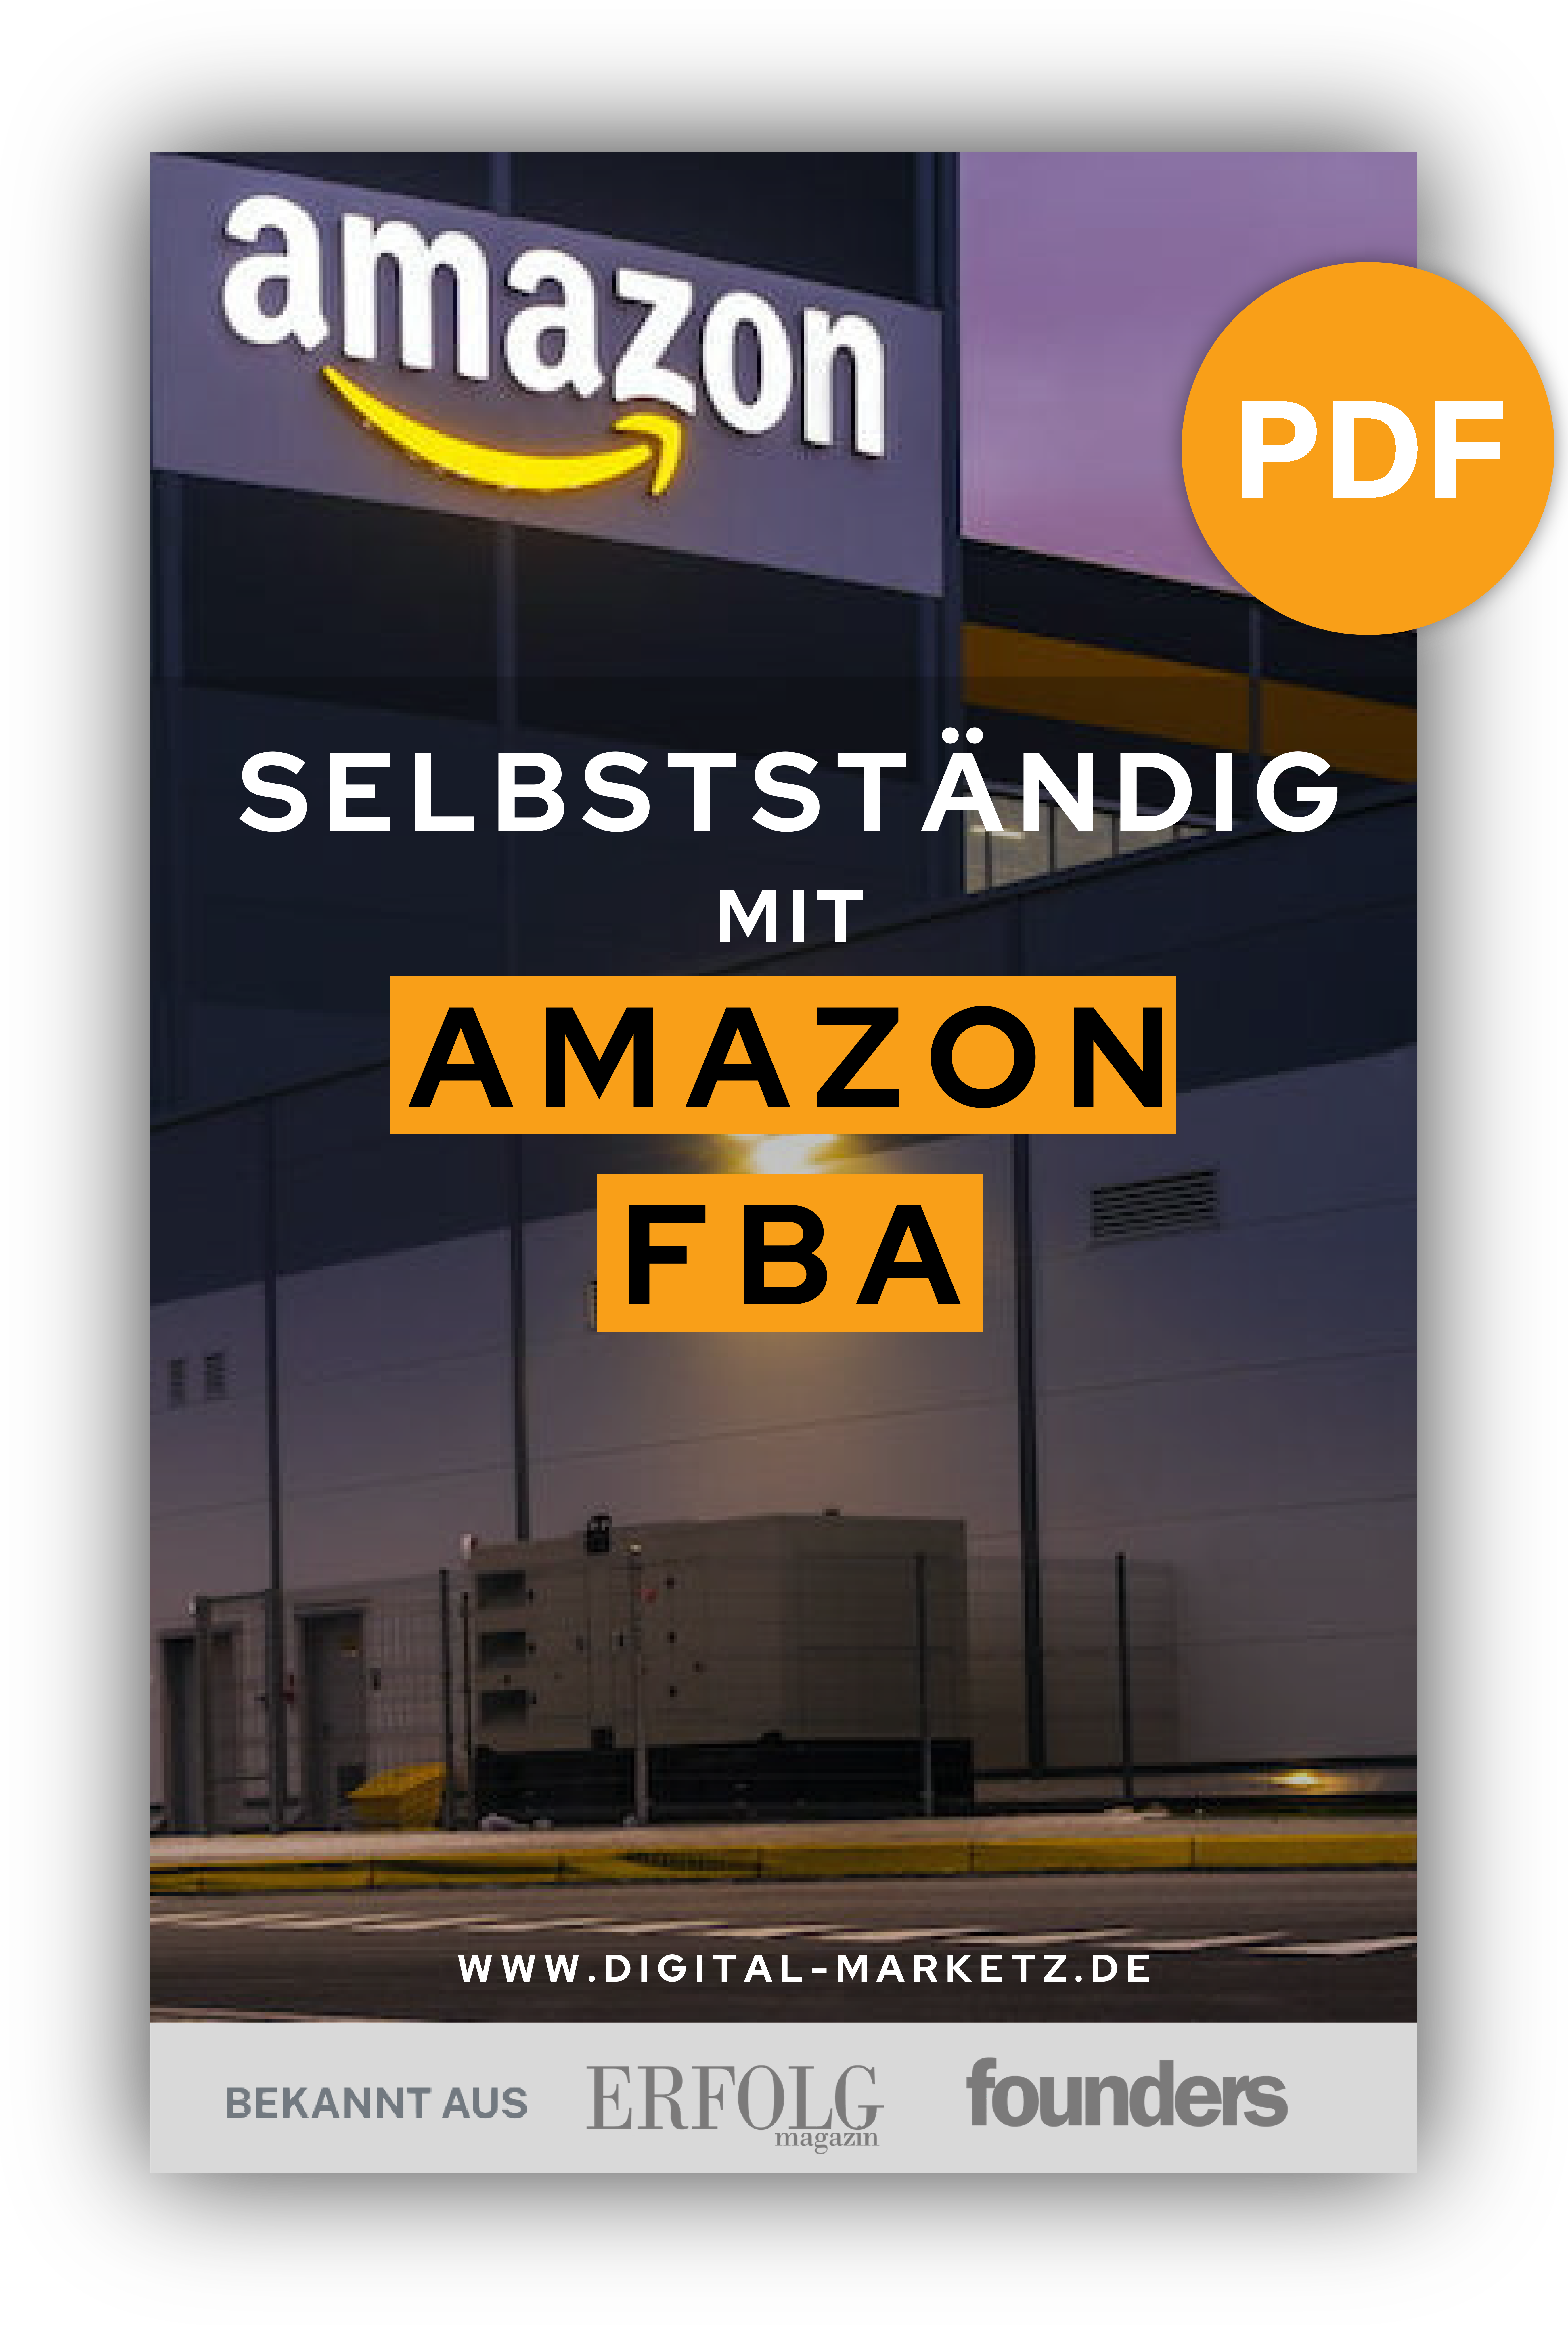 Amazon FBA Anleitung